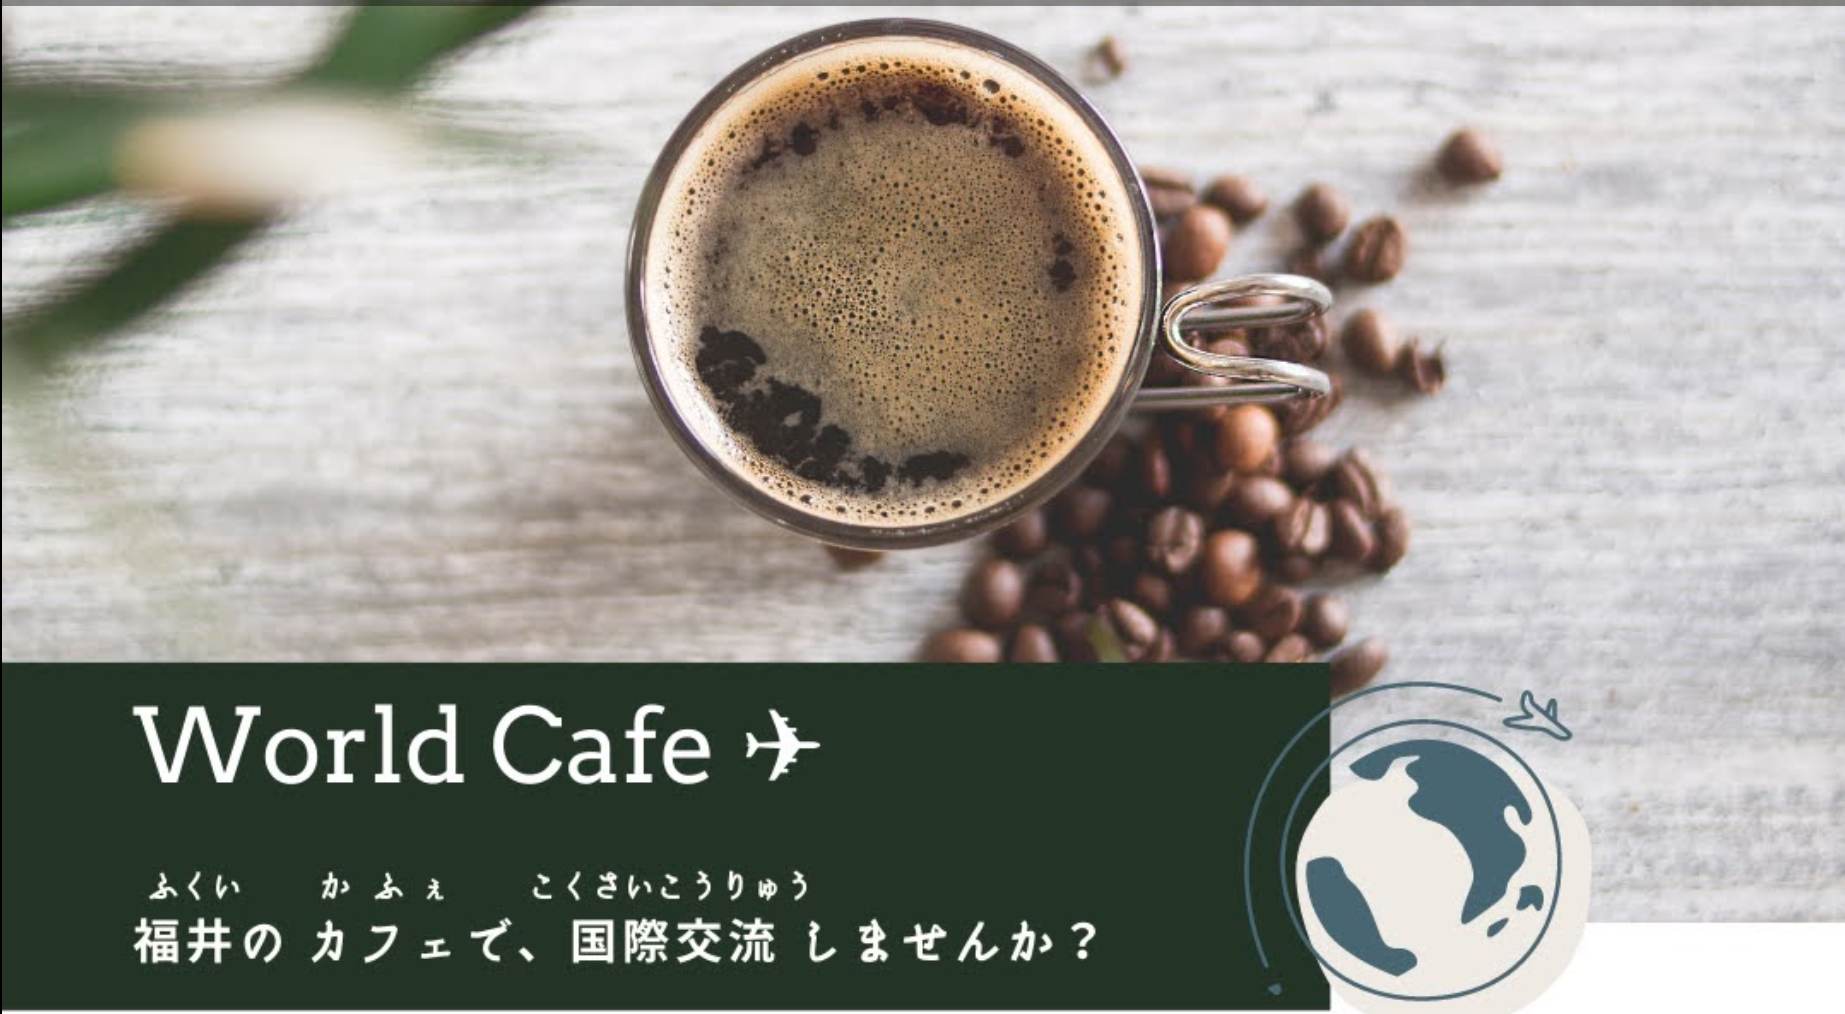 国際交流world cafe開催します。